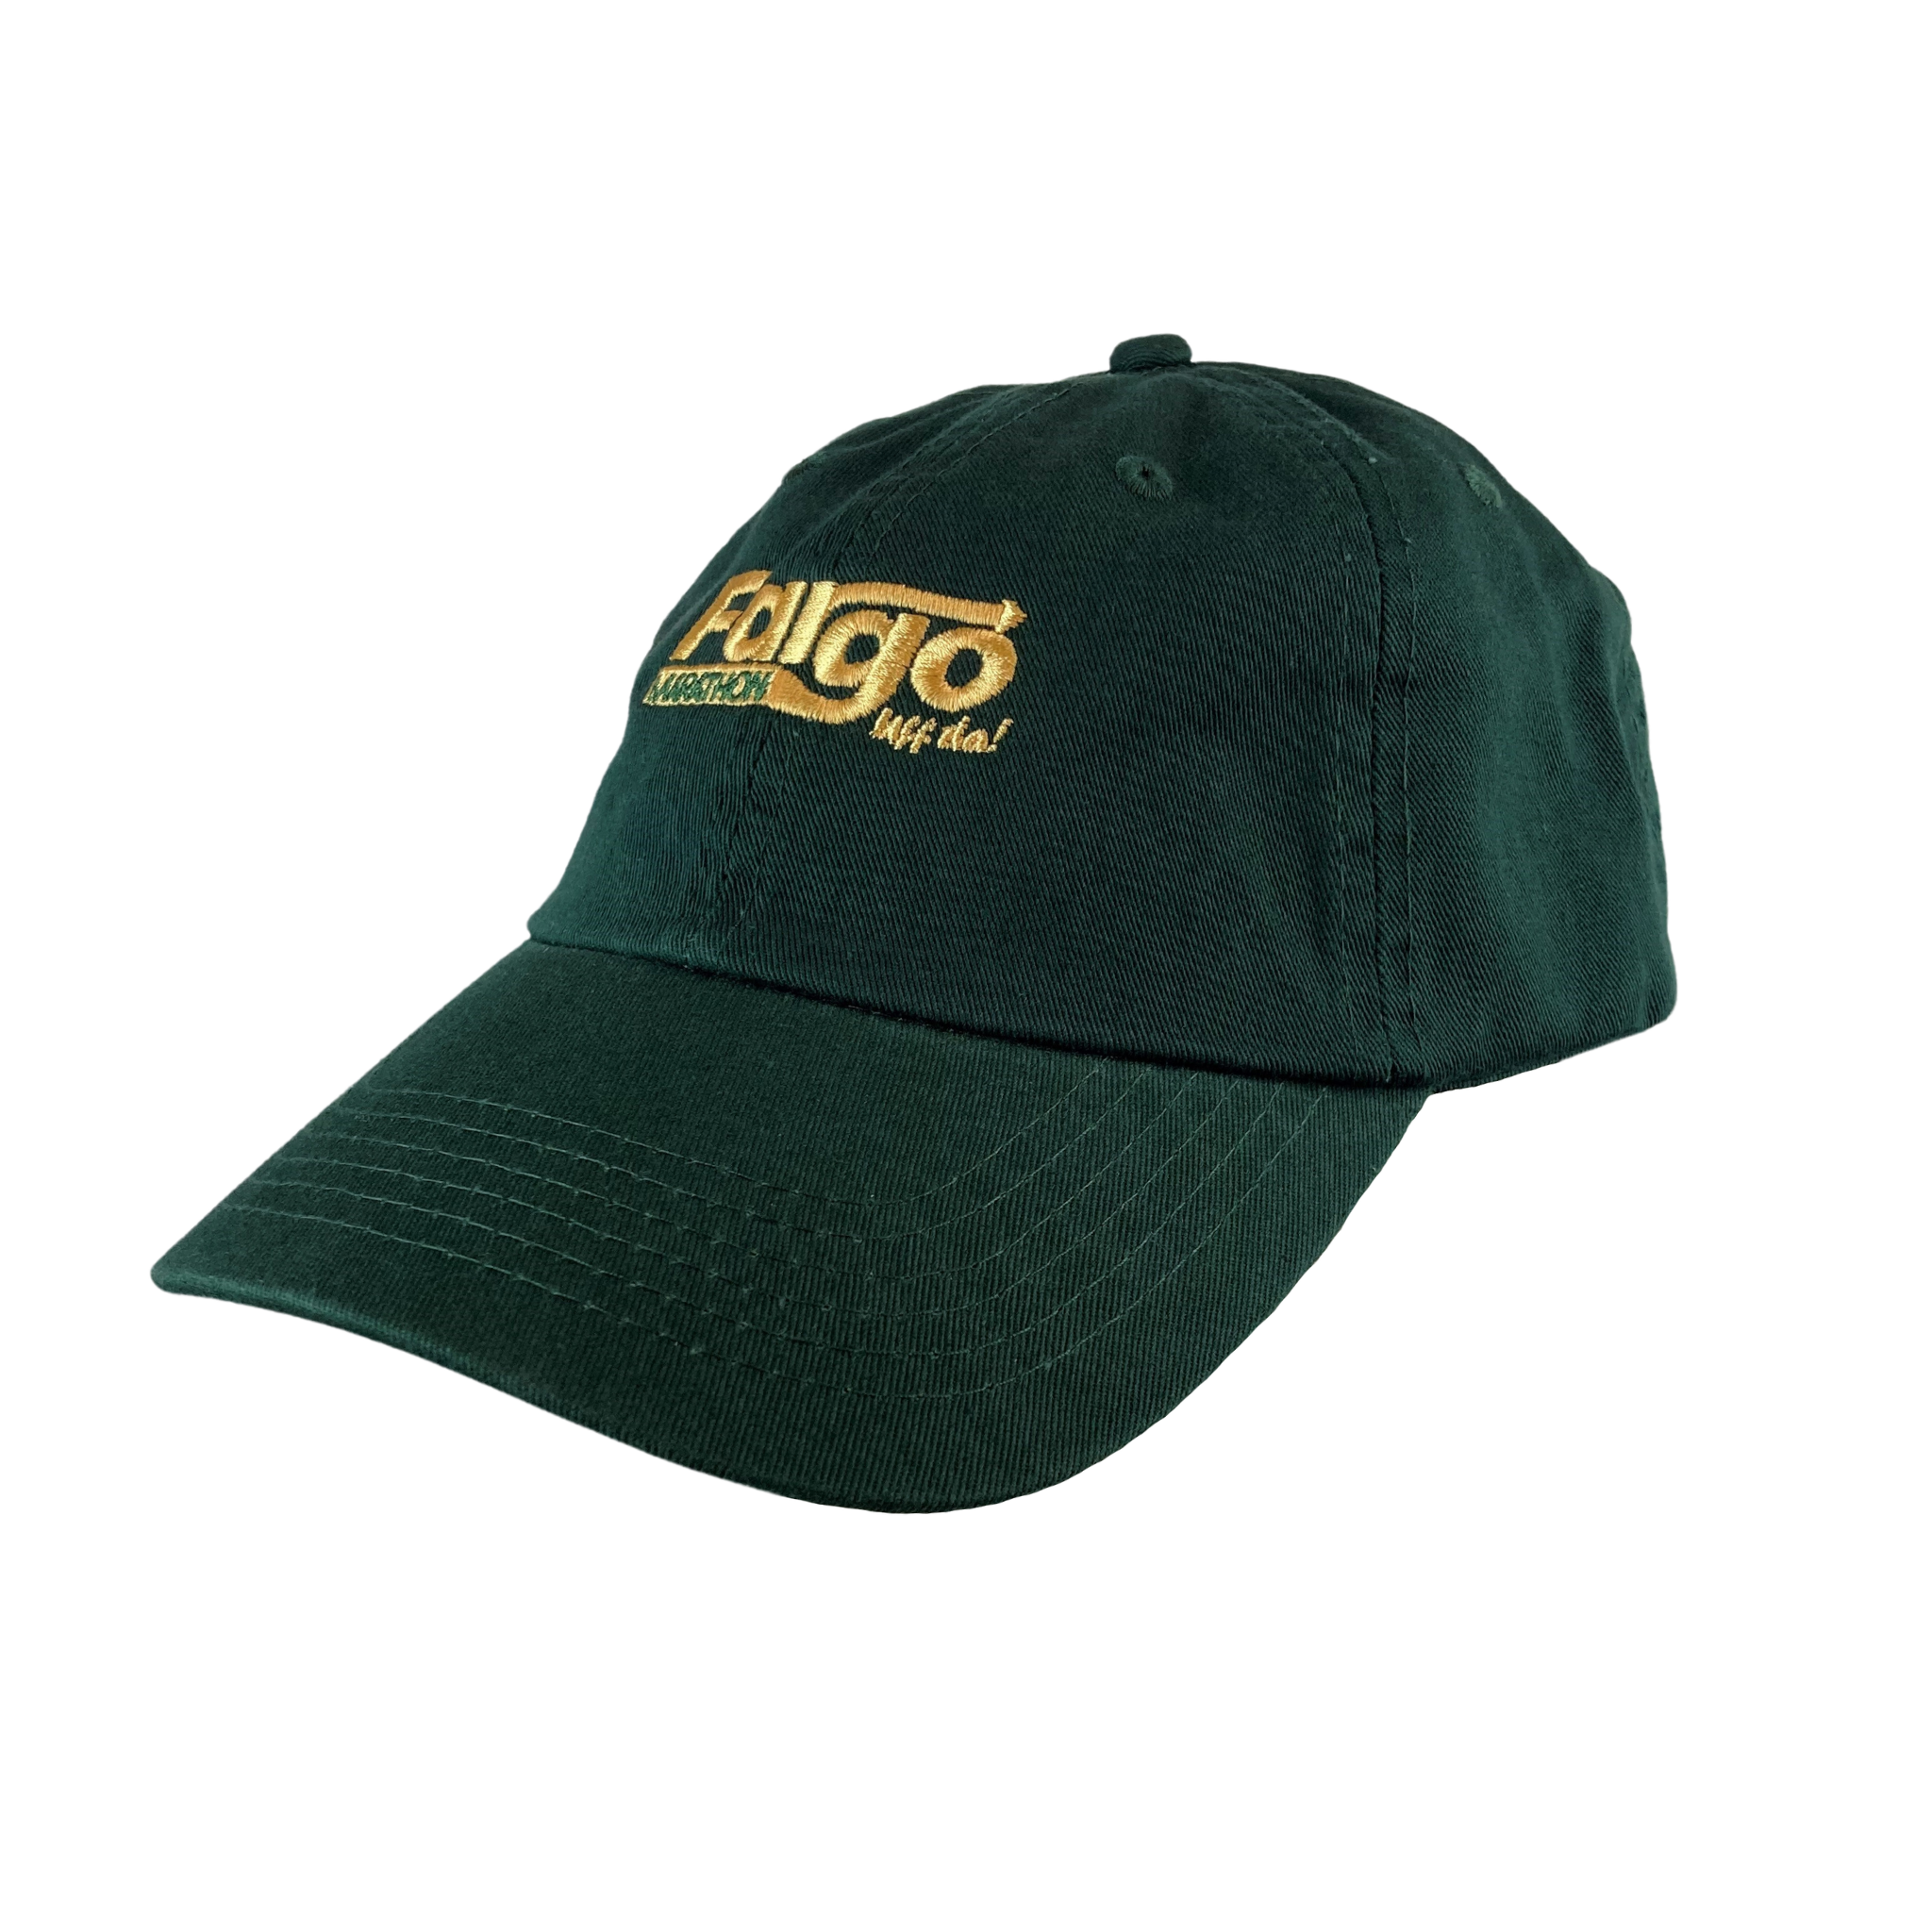 Fargo Marathon Lifestyle Hat